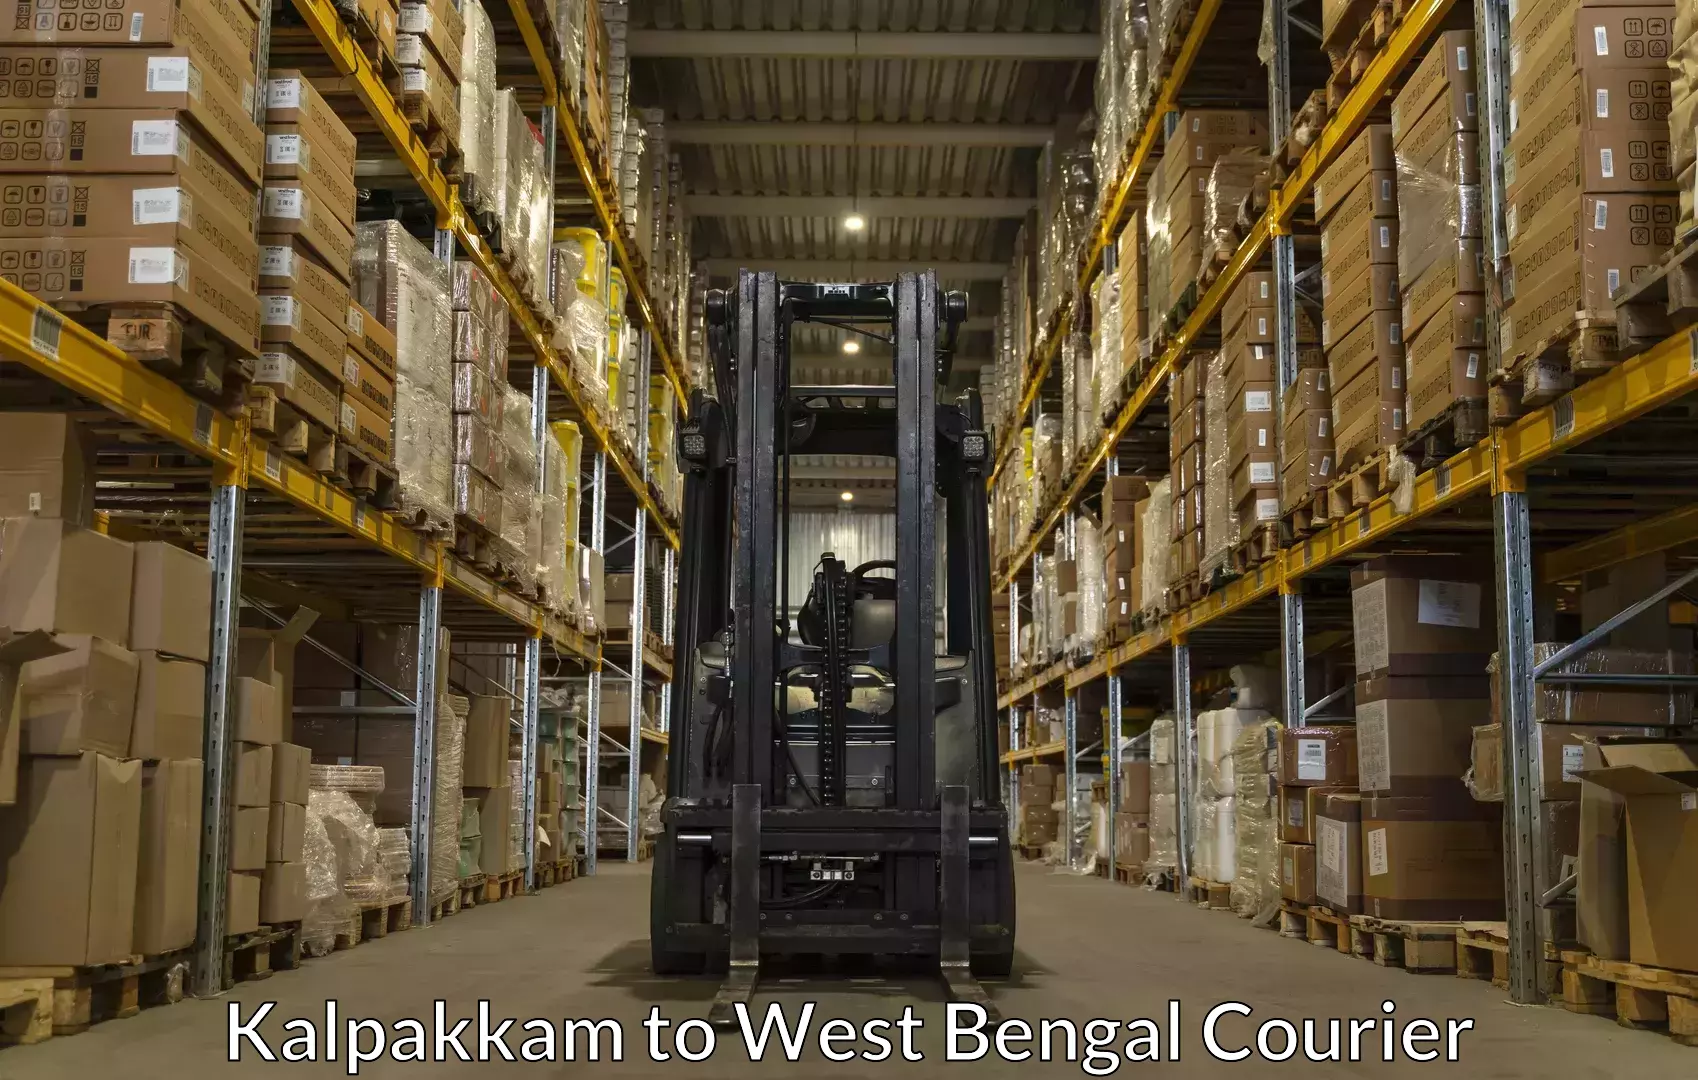 Luggage transport consulting Kalpakkam to Bardhaman